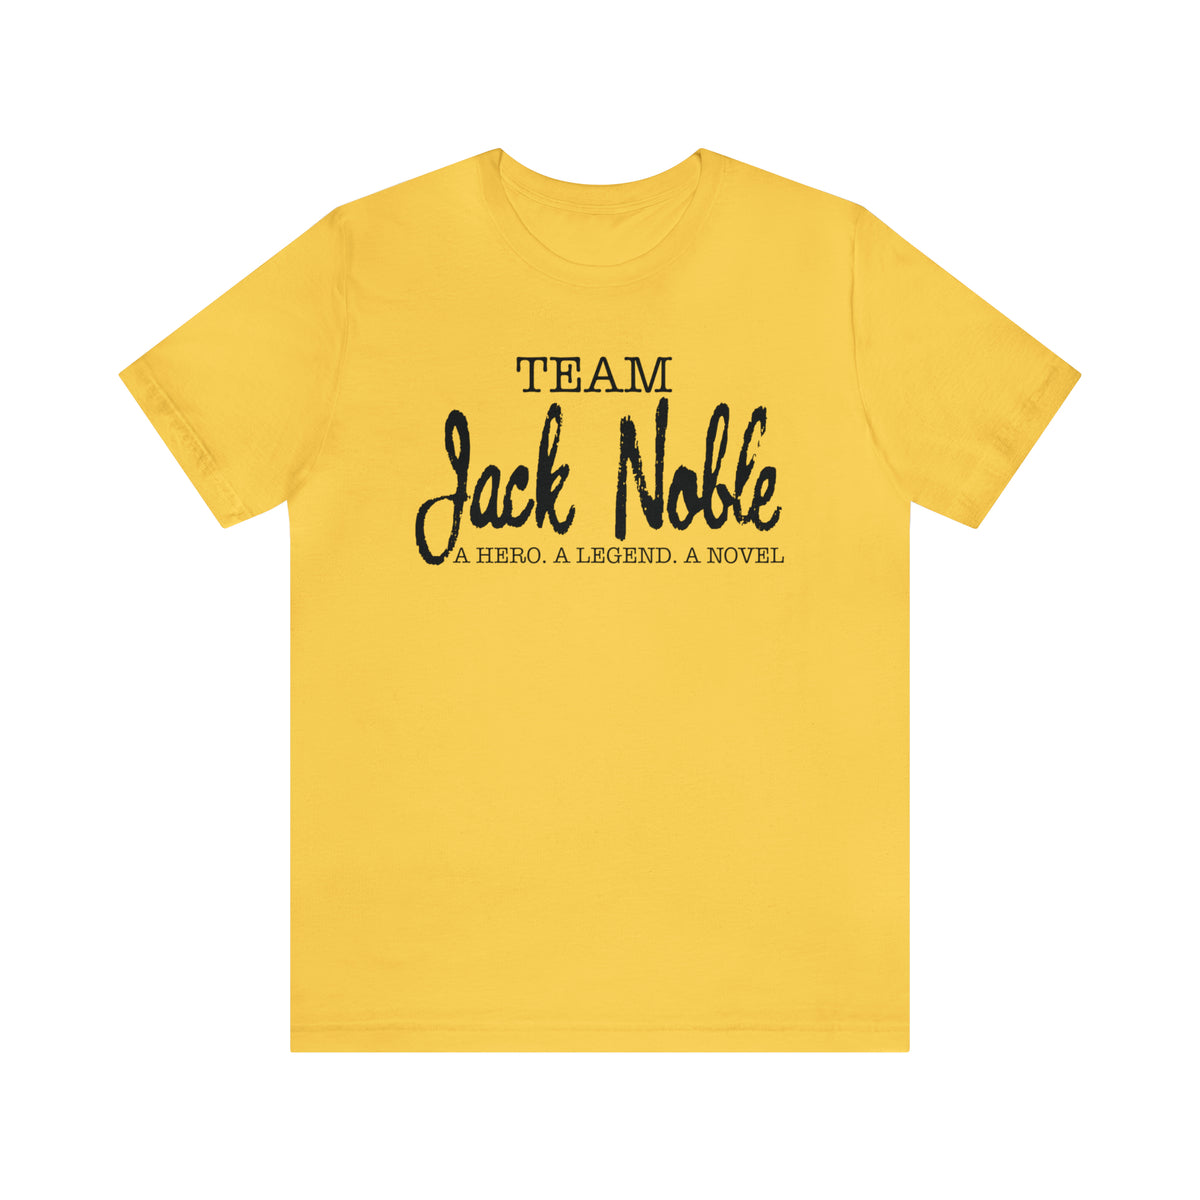 Team Jack Noble. A Hero. A Legend. A Novel.